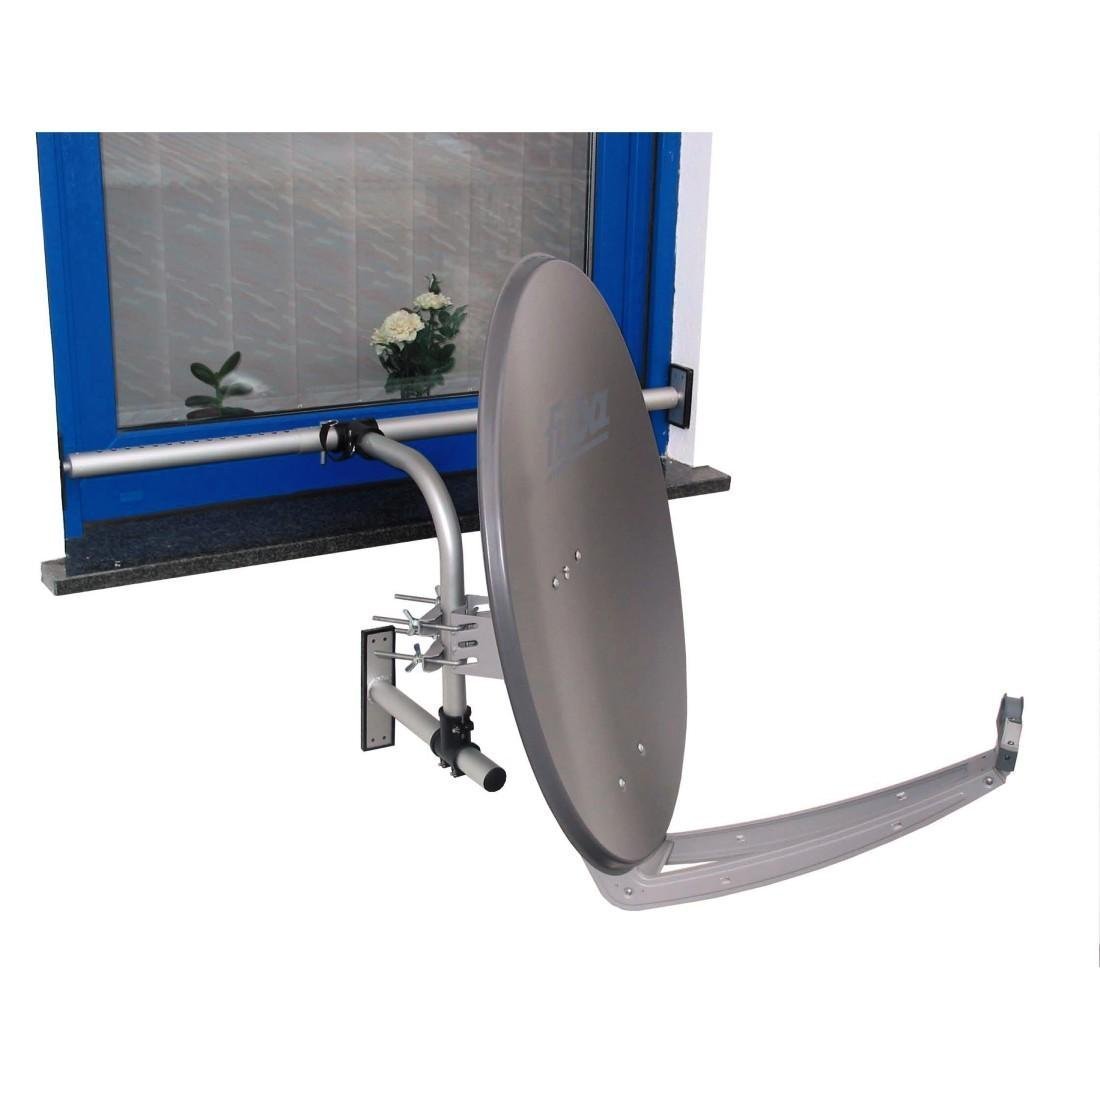 Kabel-Tec-Hauch Easymount DIY 1 Halterungssystem für Satellitenantennen